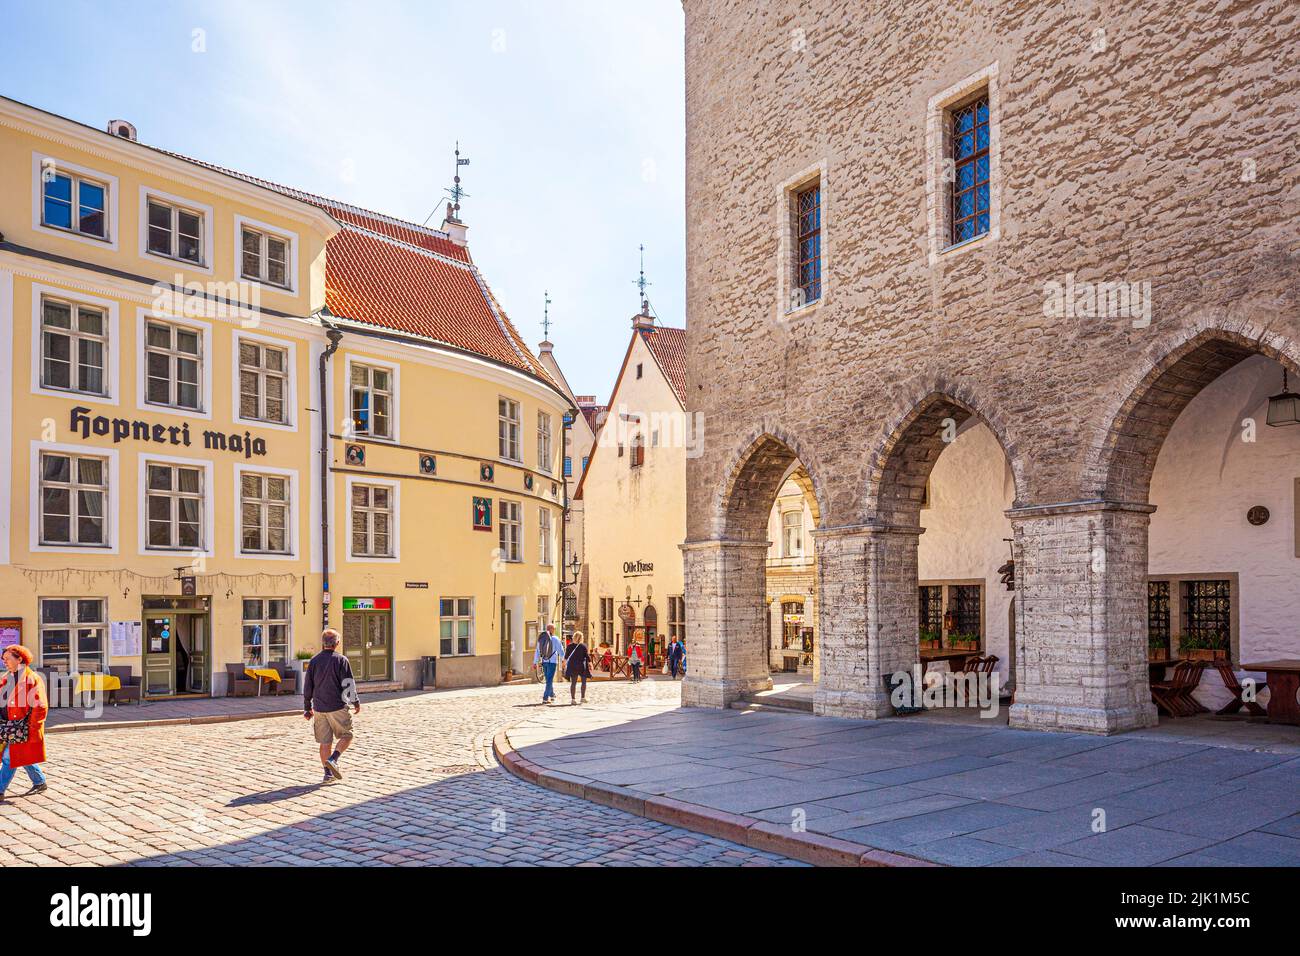 El siglo 16th Hopneri Maja y el Ayuntamiento del siglo 14th (Tallinna raekoda) en la plaza en la Ciudad Vieja de Tallinn, la capital de Estonia Foto de stock